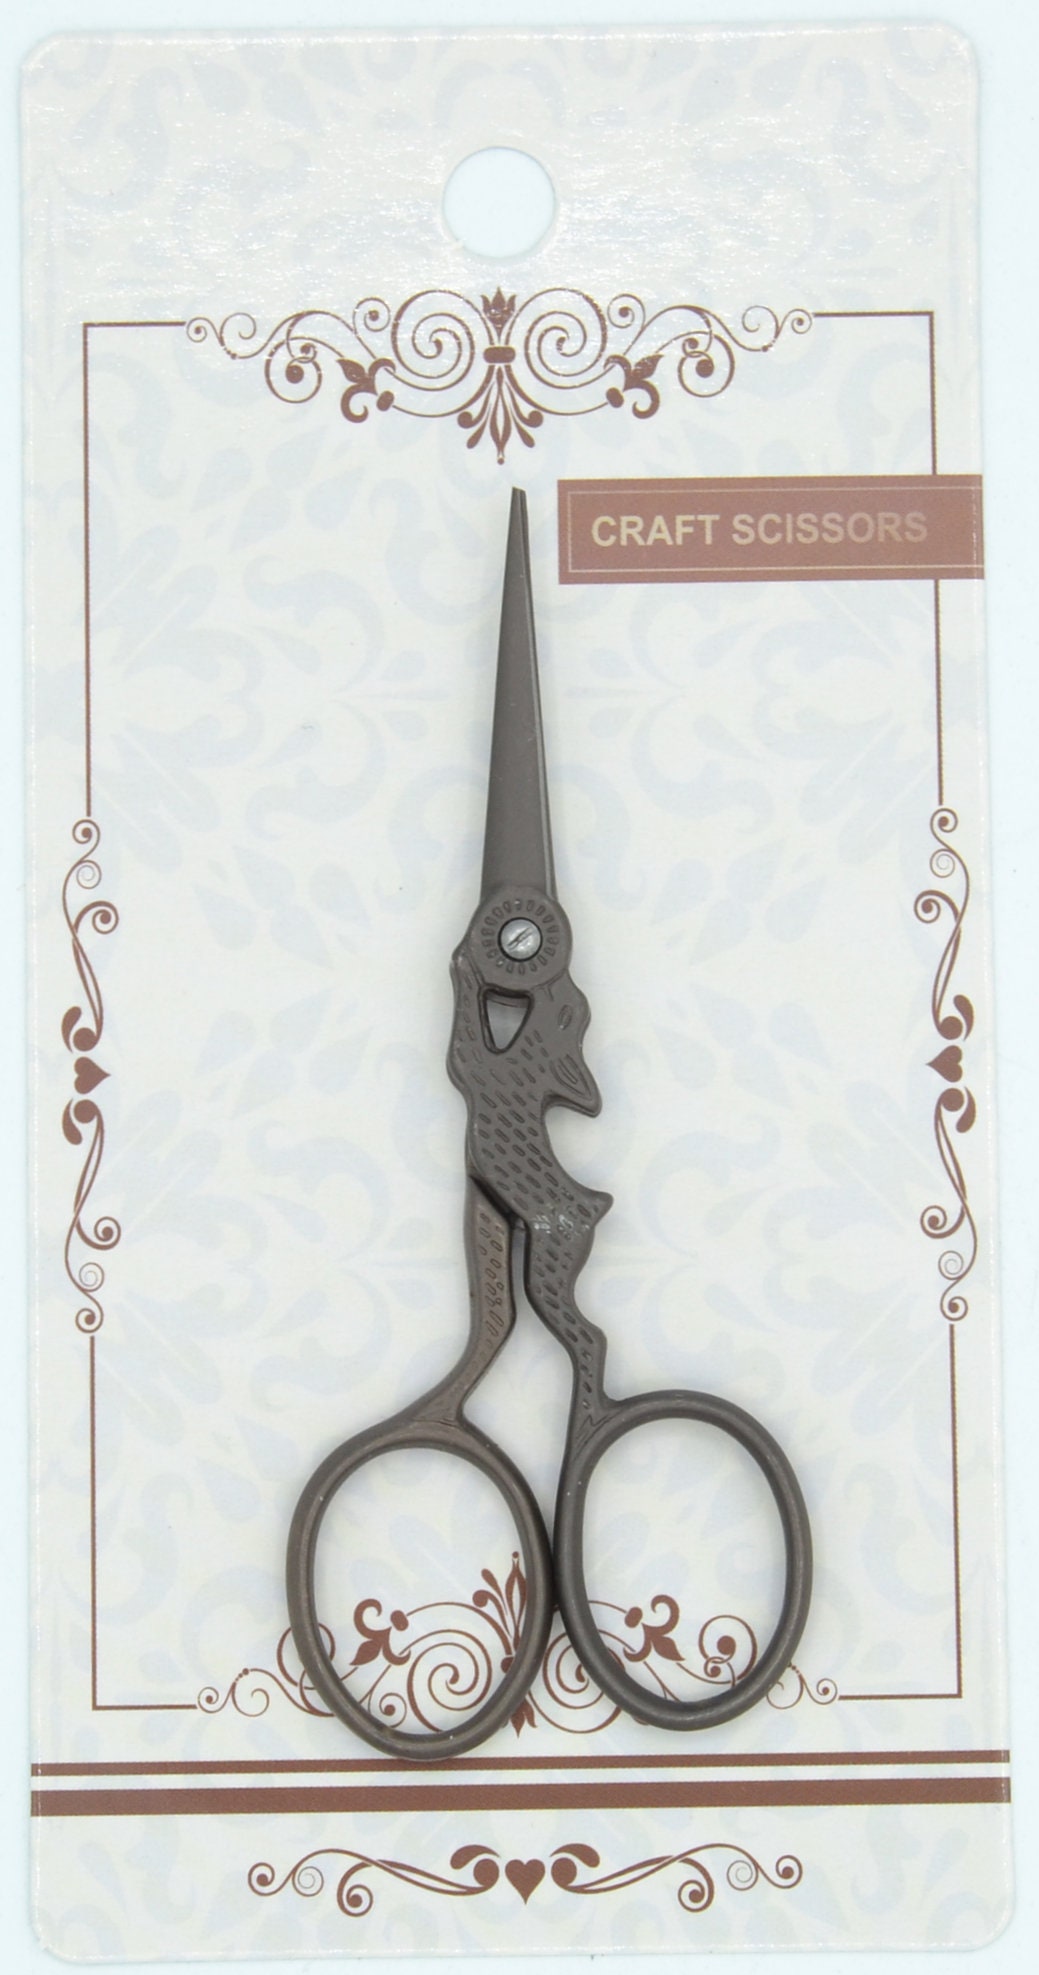 Scissors All Purpose, Embroidery Scissors, Small Scissors, Scissors For  Crafting, Sewing Scissors, Sharp Scissors, Embroidery Scissors,2pack